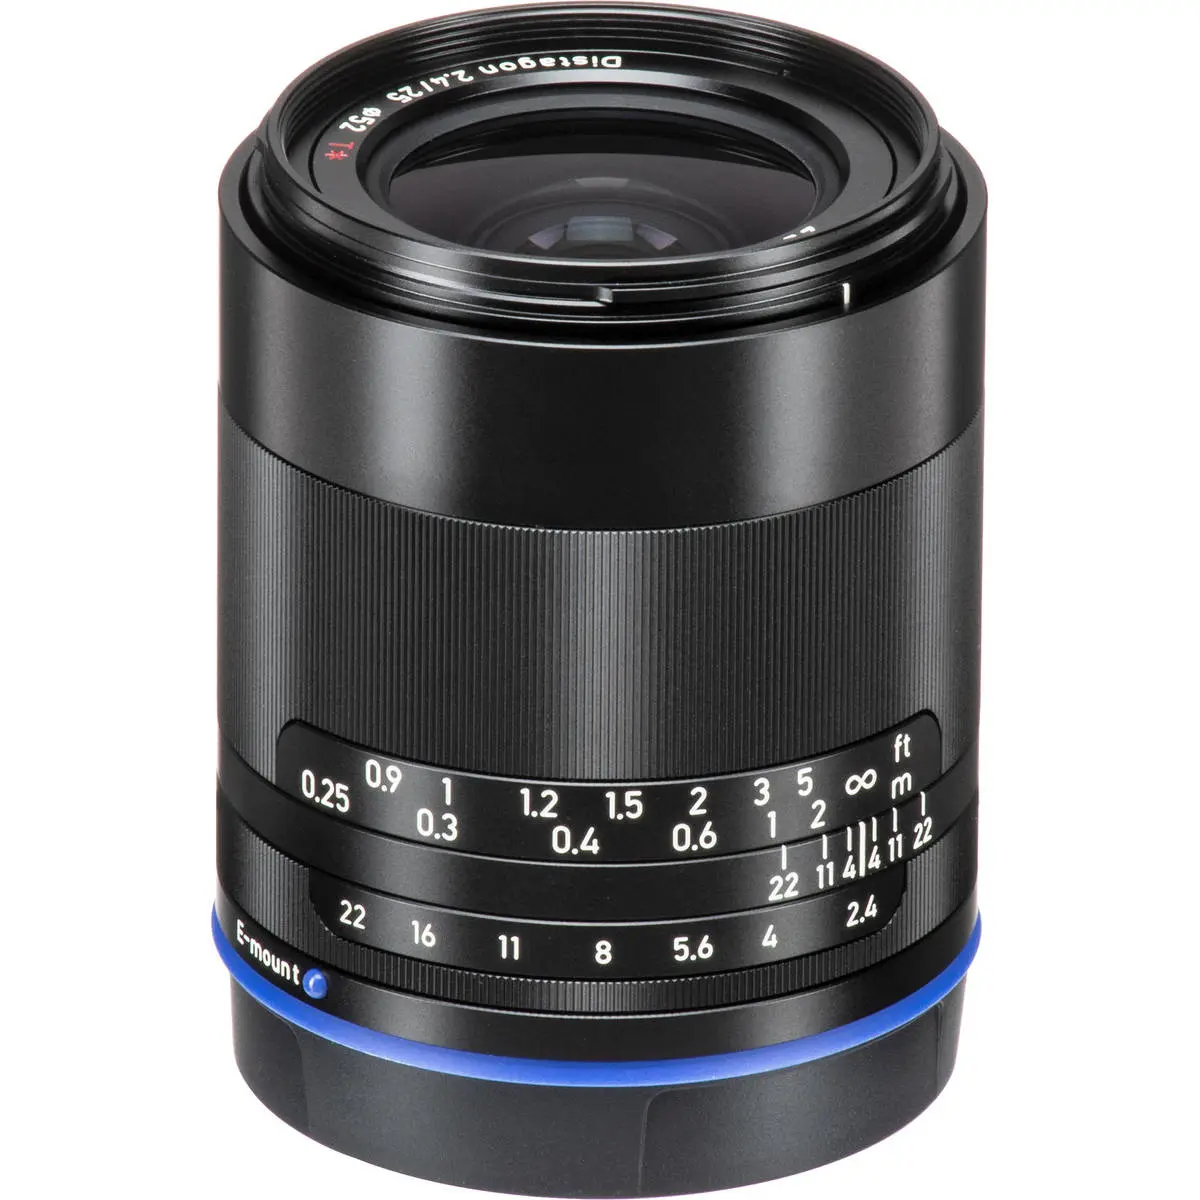 3. Carl Zeiss Loxia 2.4/25 (Sony FE) Lens